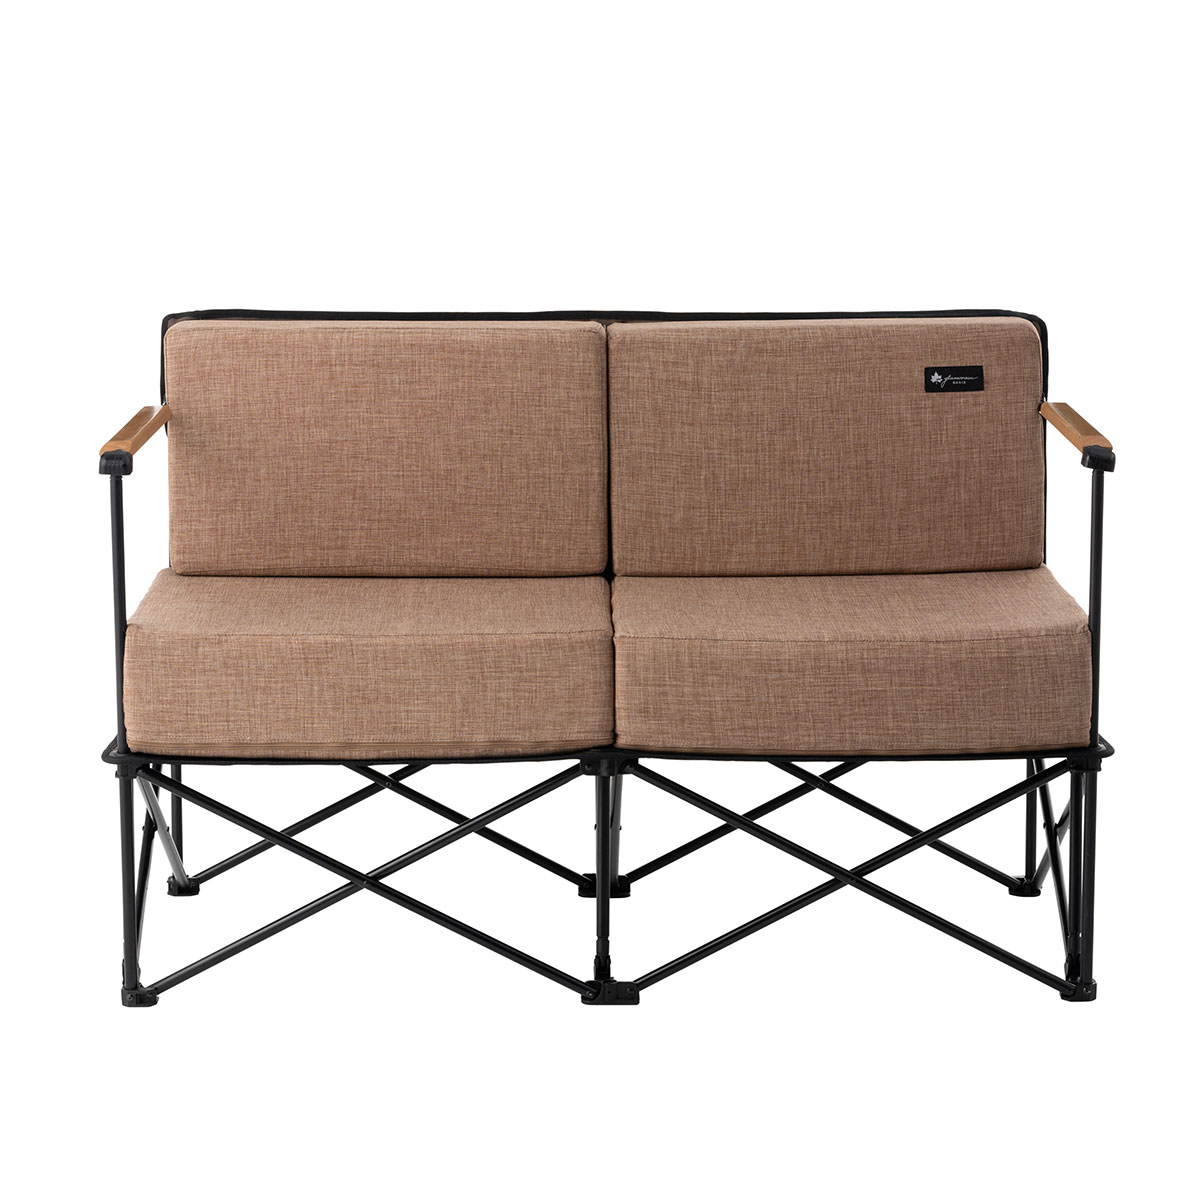 グランベーシック グランプソファ2 ギア 家具 椅子 ベンチ 製品情報 ロゴスショップ公式オンライン